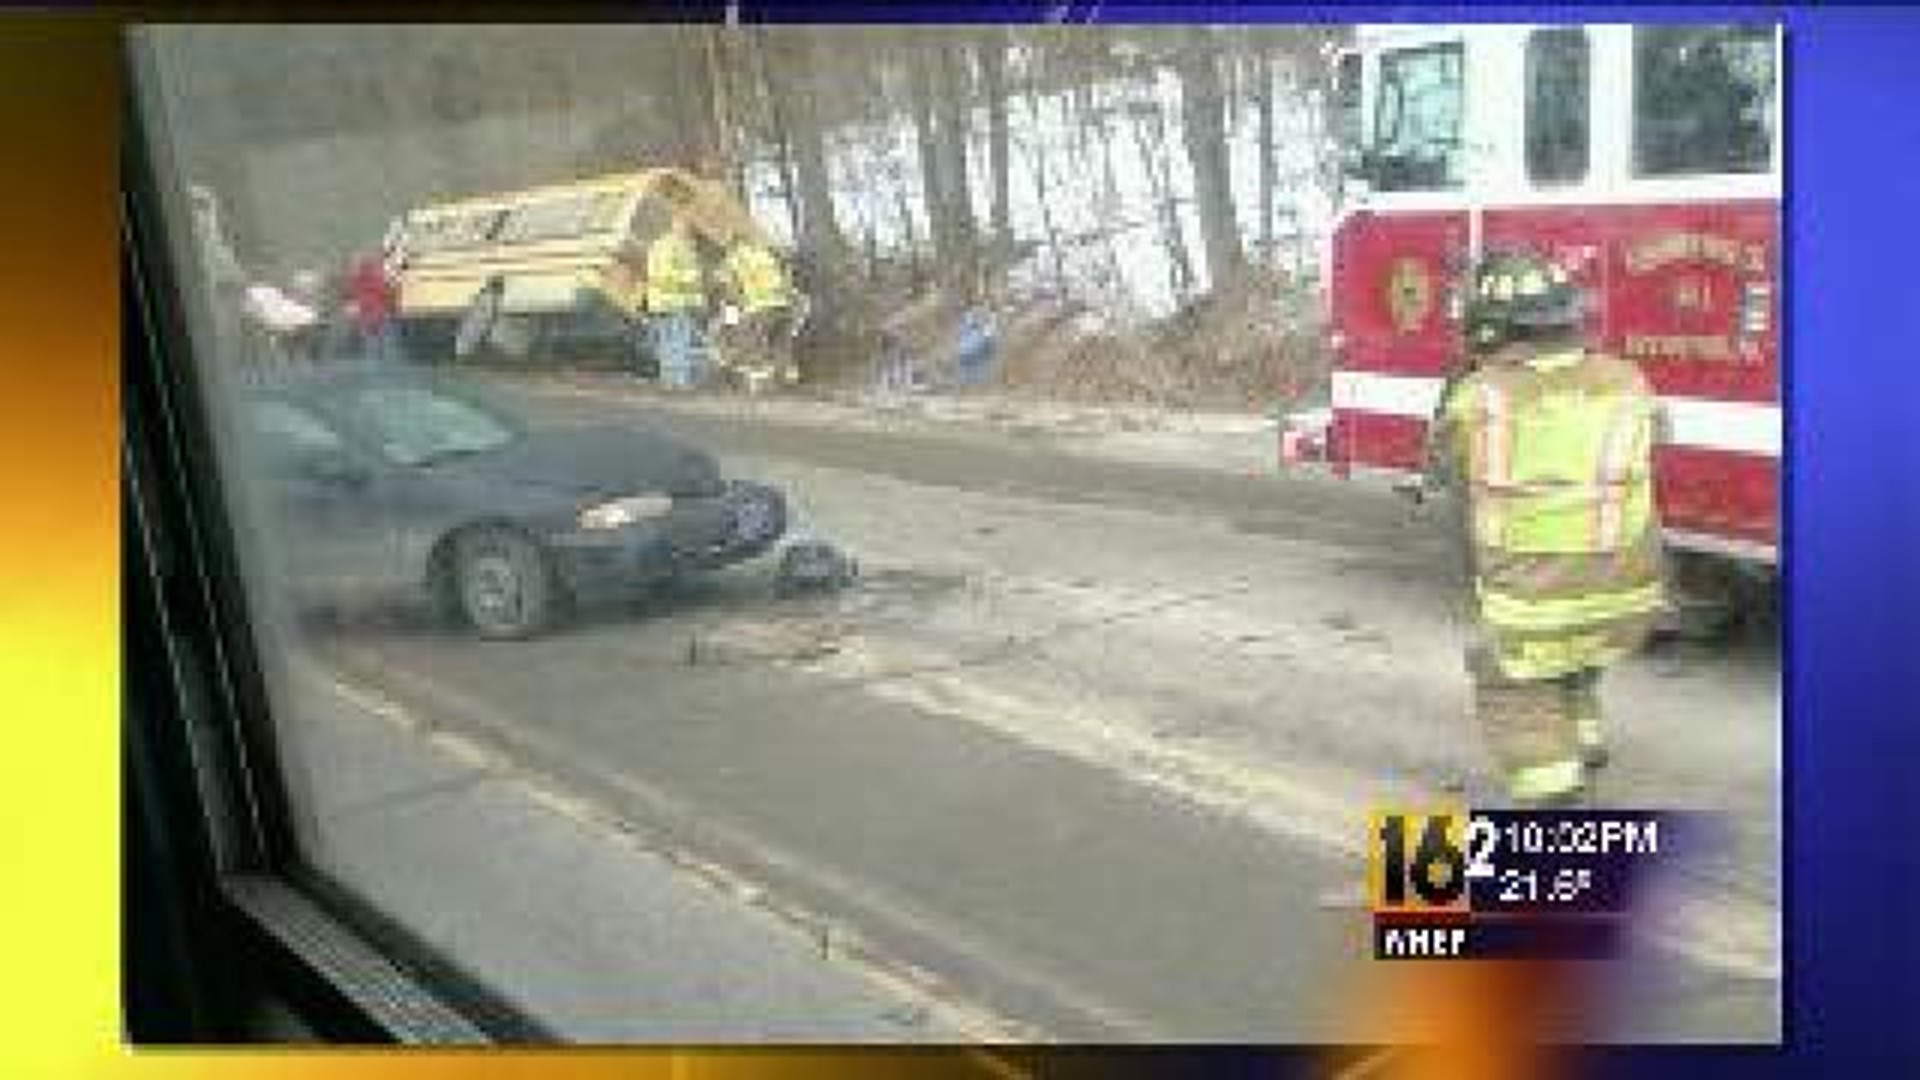 School Bus Crash In Susquehanna County